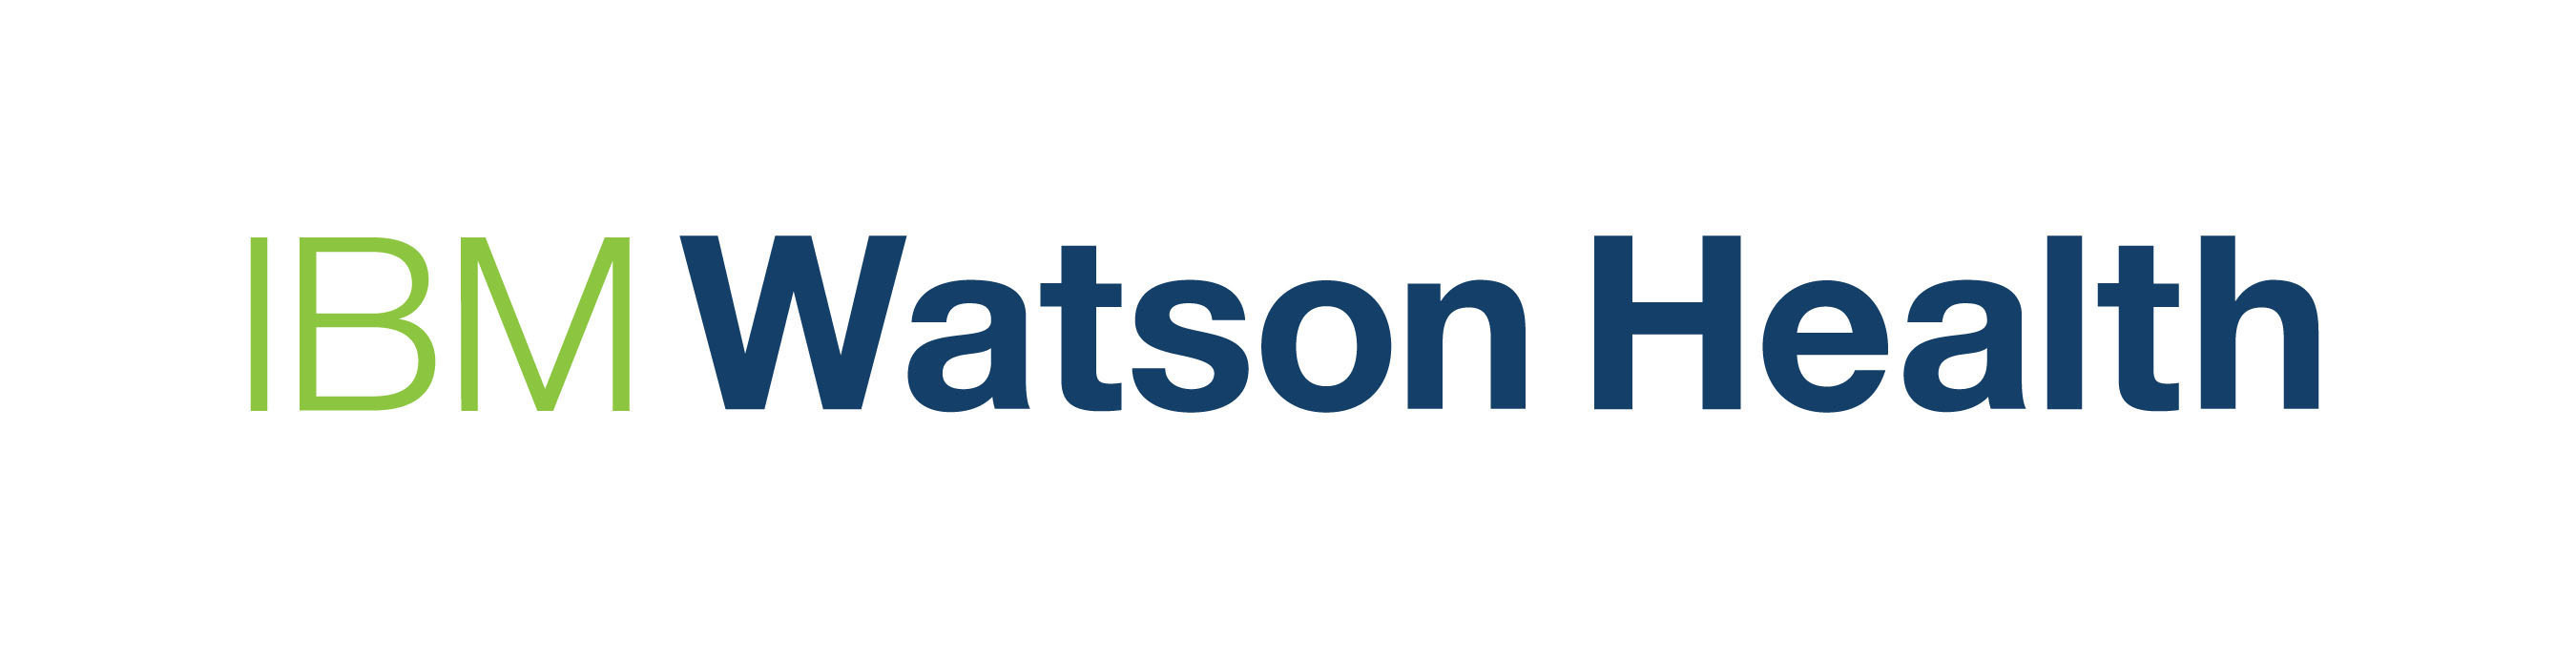 ibm watson logo transparent